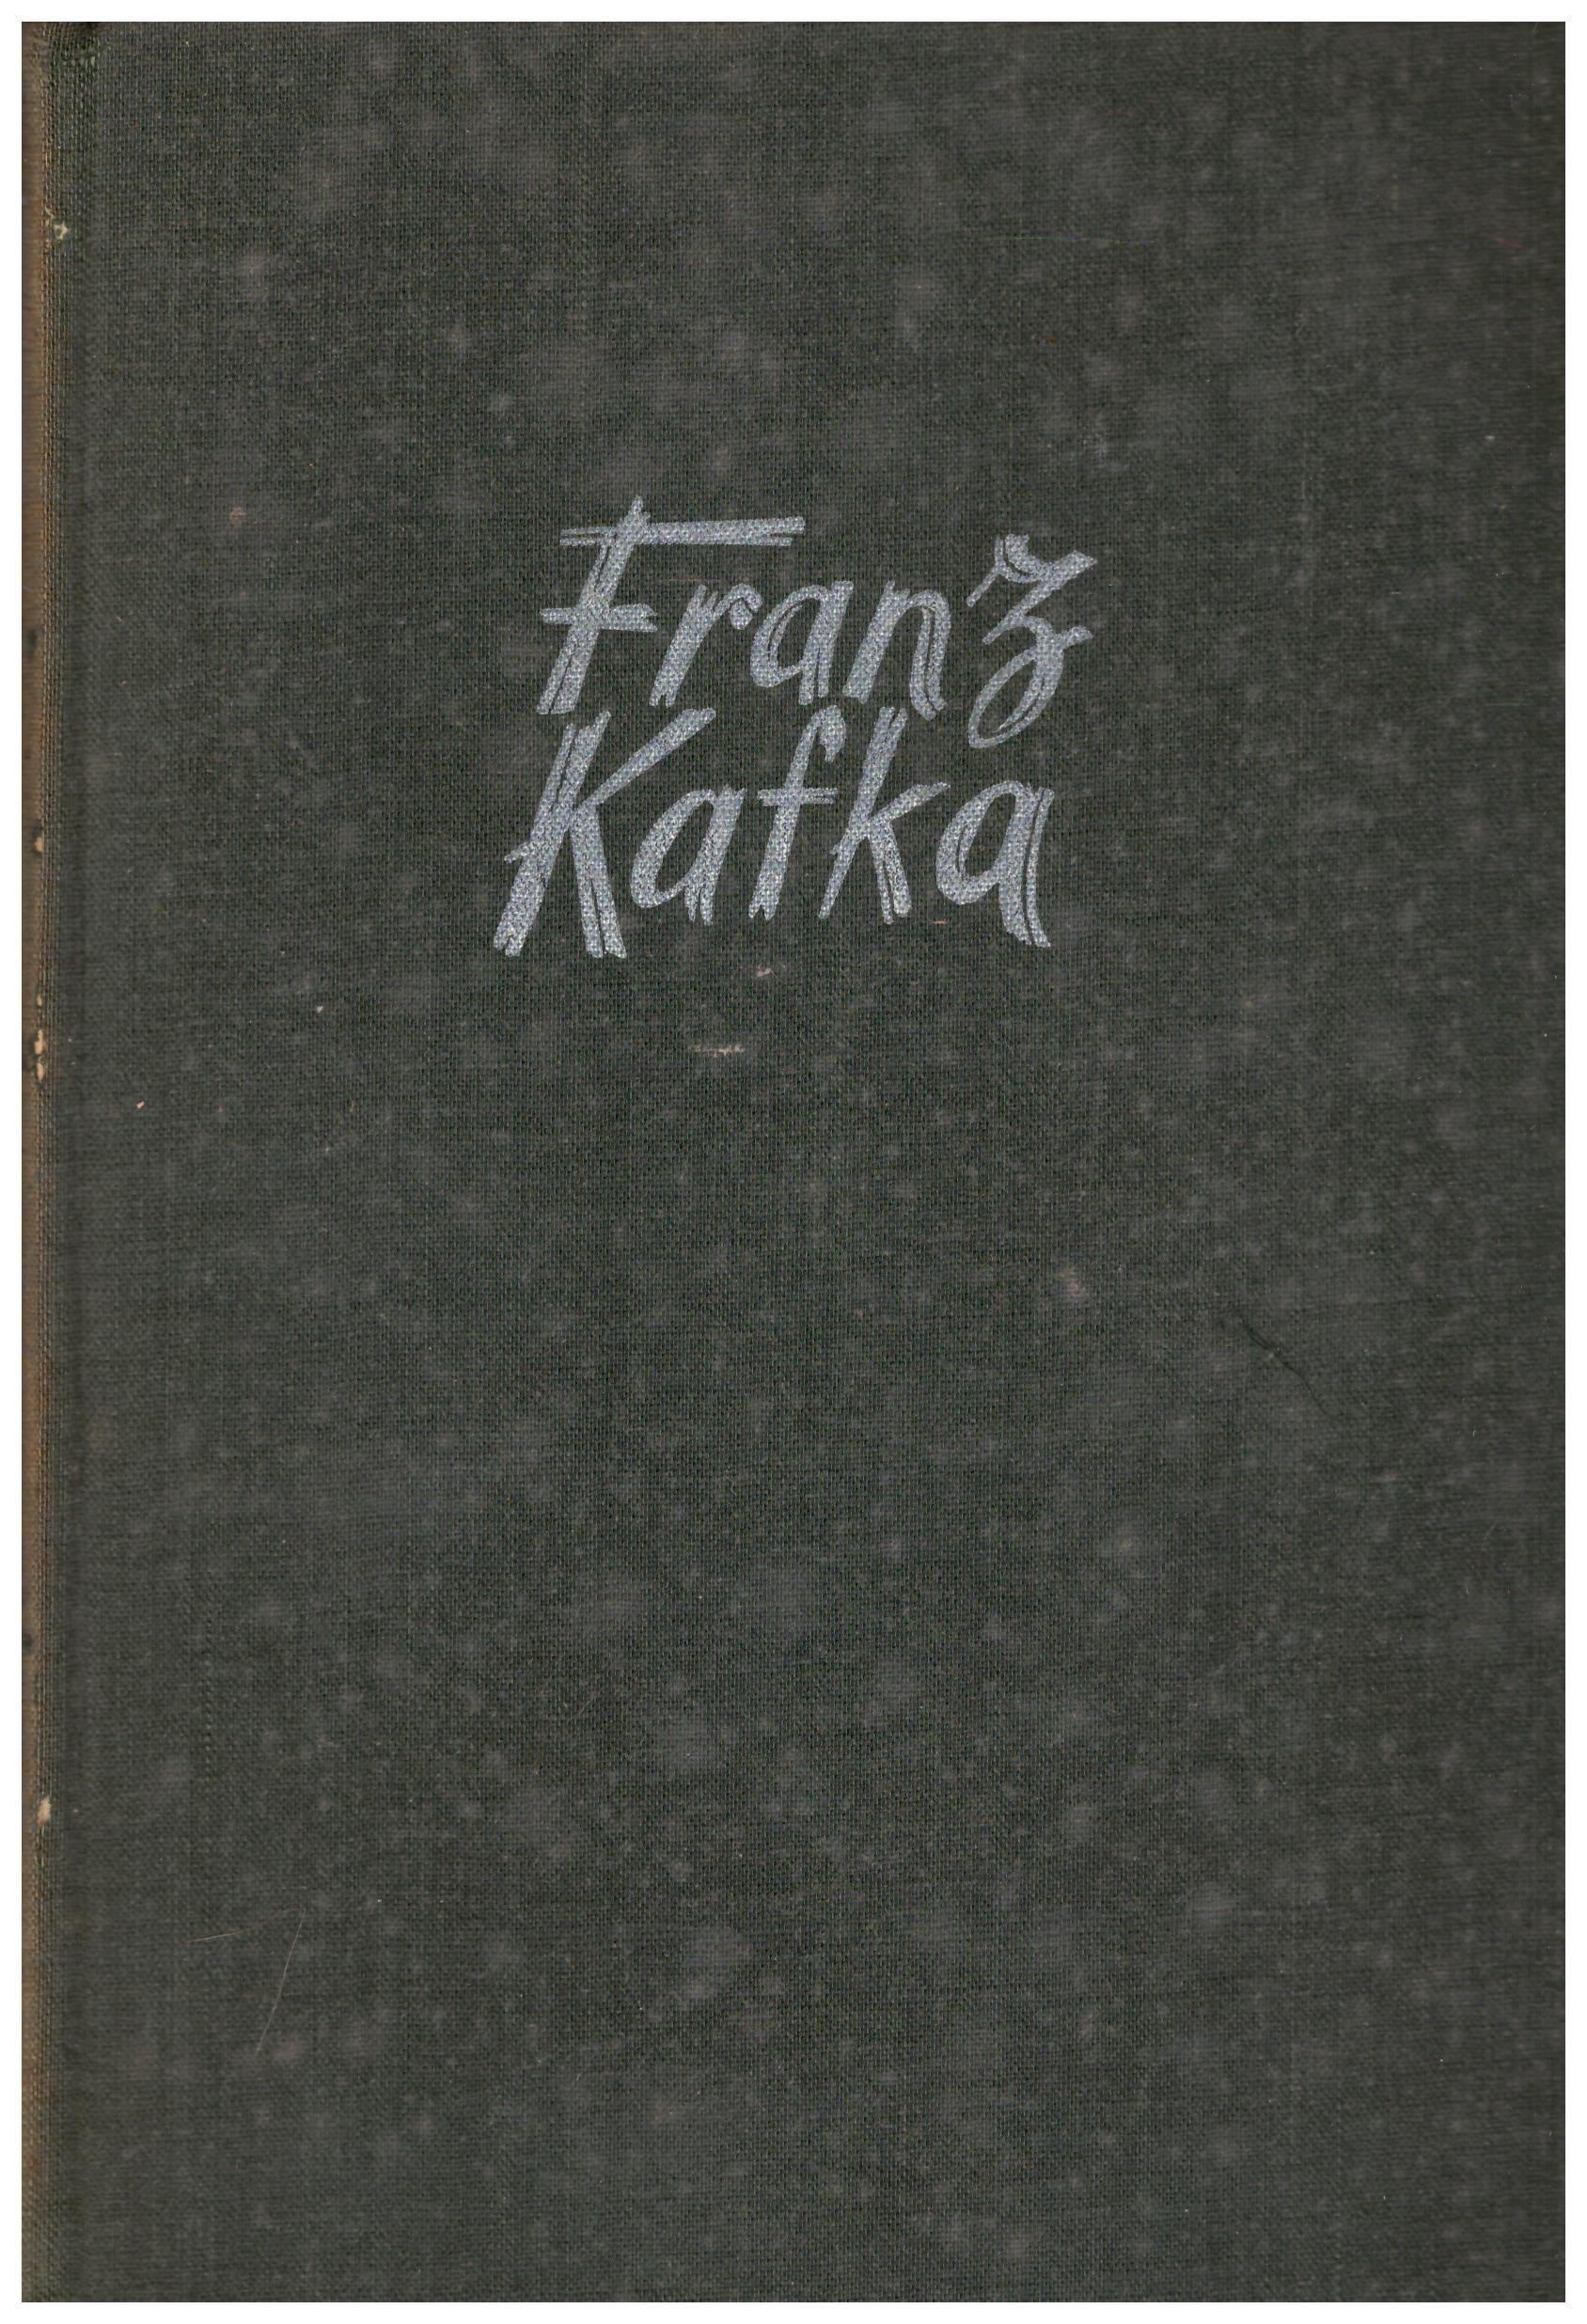 Titolo: Il castello Autore: Franz Kafka Editore: Arnoldo Mondadori, 1949